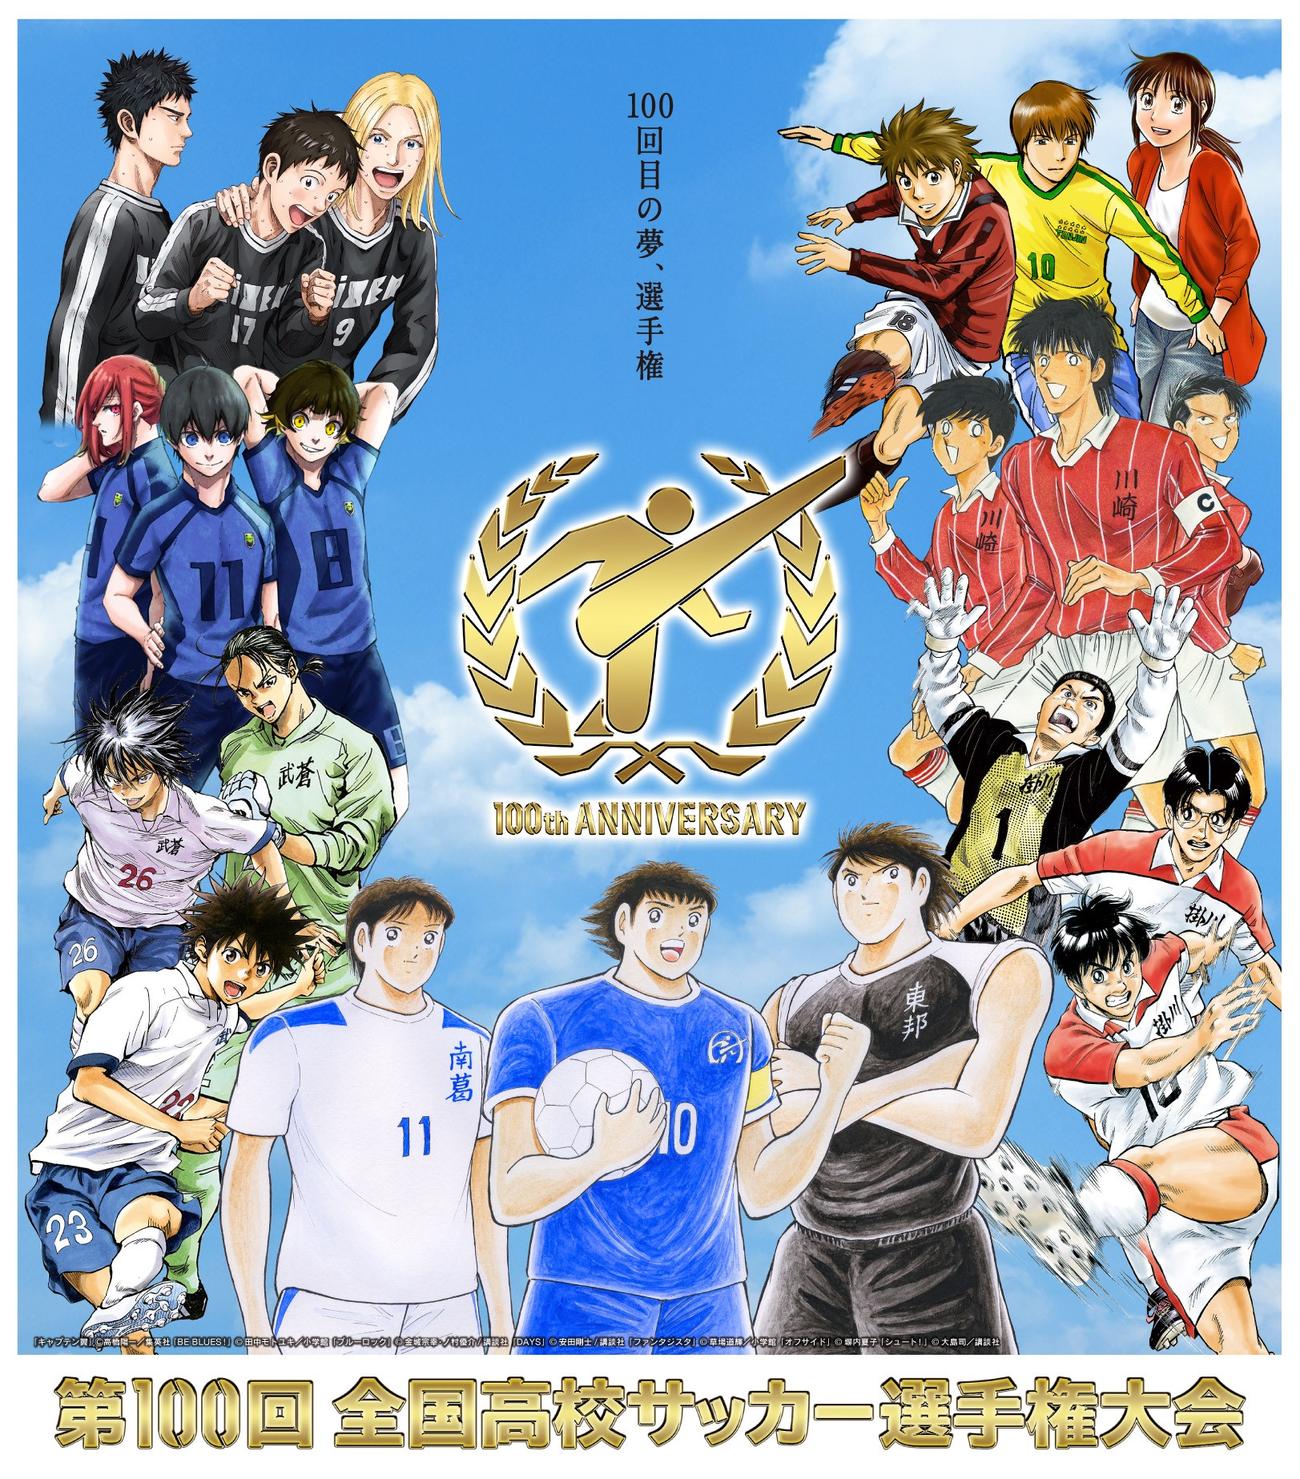 日本テレビが放送する「第100回全国高校サッカー選手権大会」地区大会の公式ポスターデザイン